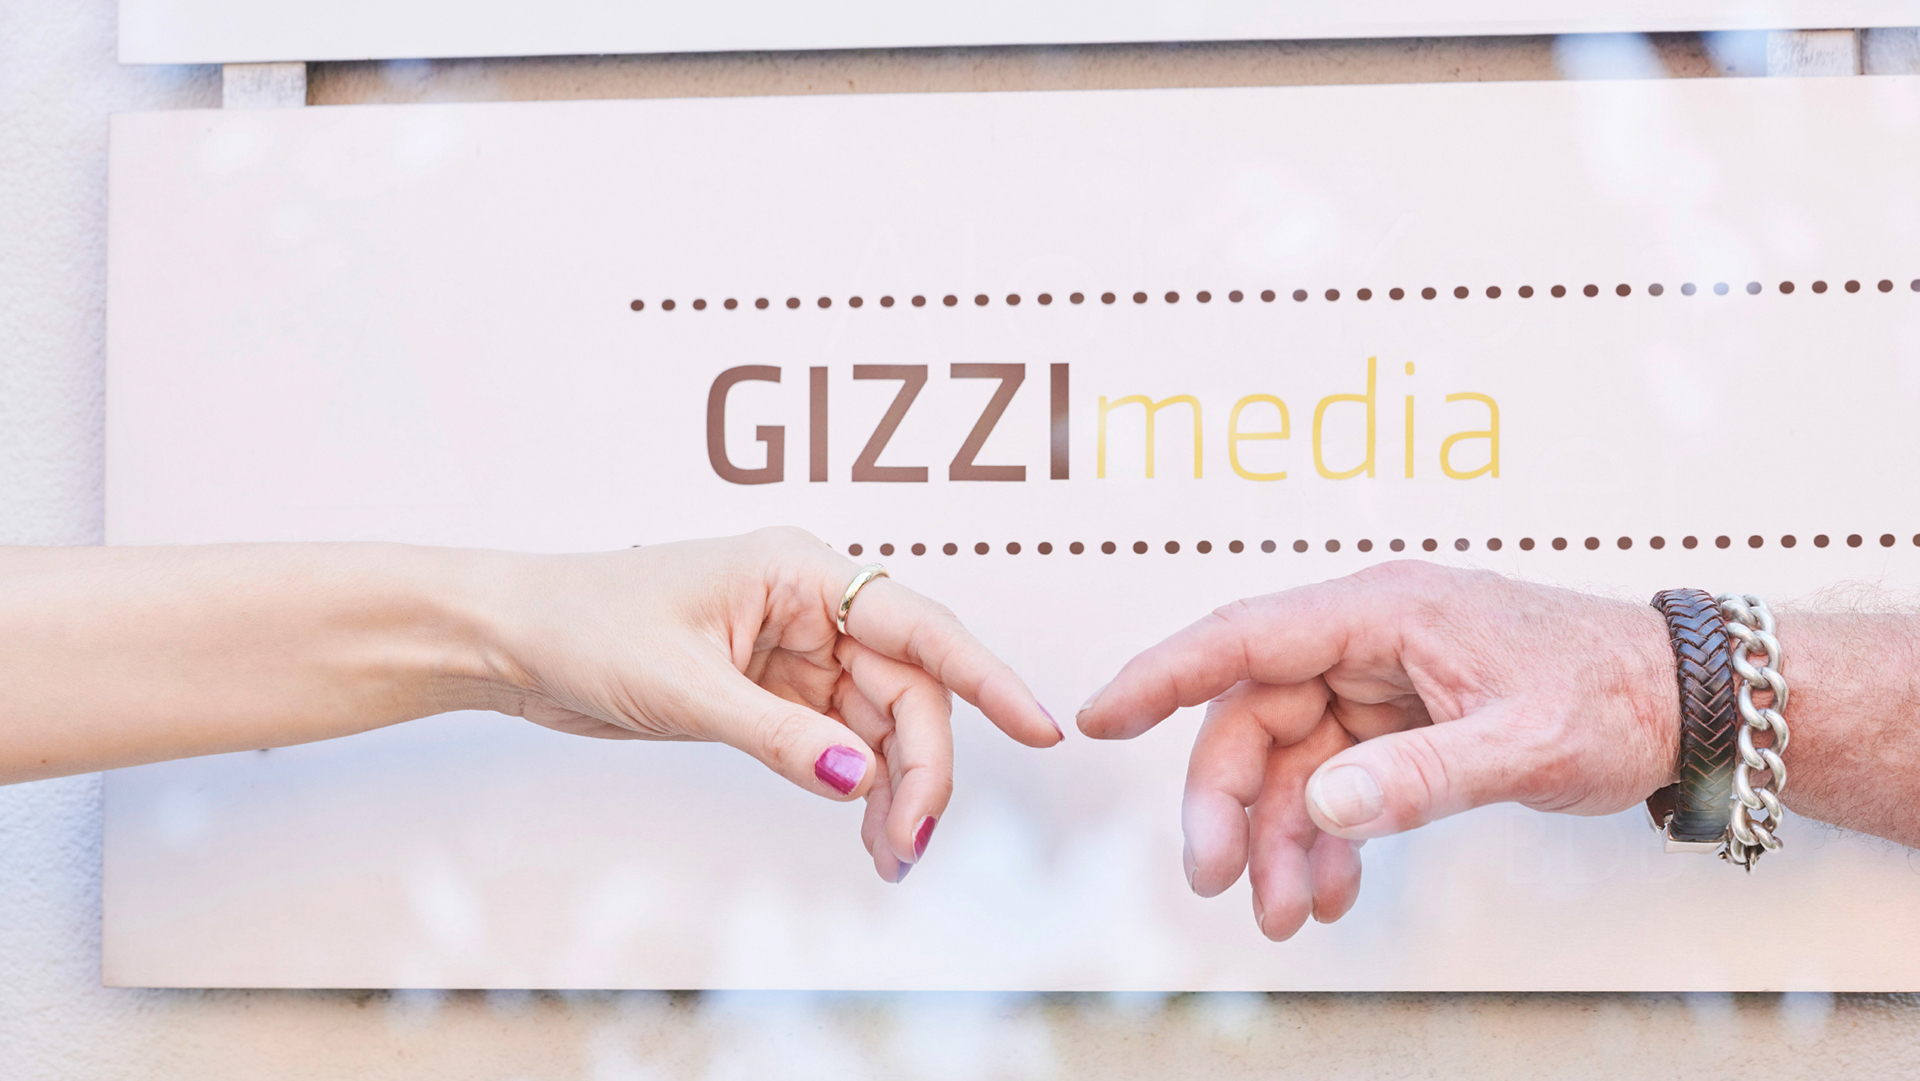 GIZZImedia verbindet Menschen